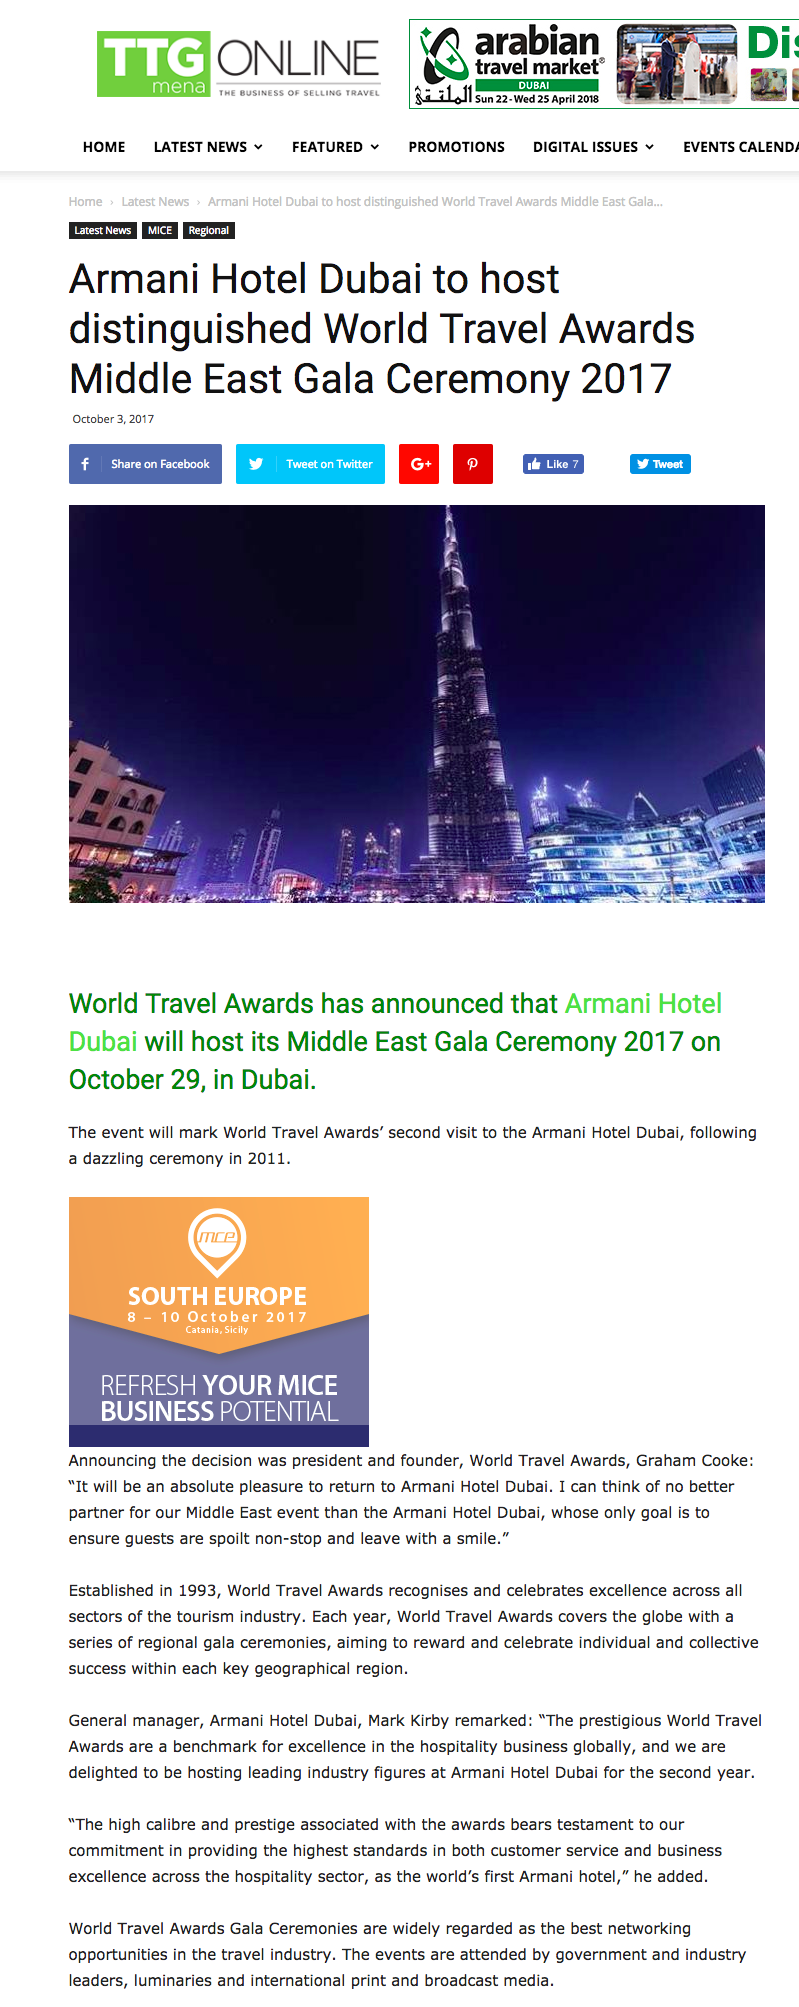 Armani Hotel Dubai to host distinguished World Travel Awards Middle East Gala Ceremony 2017